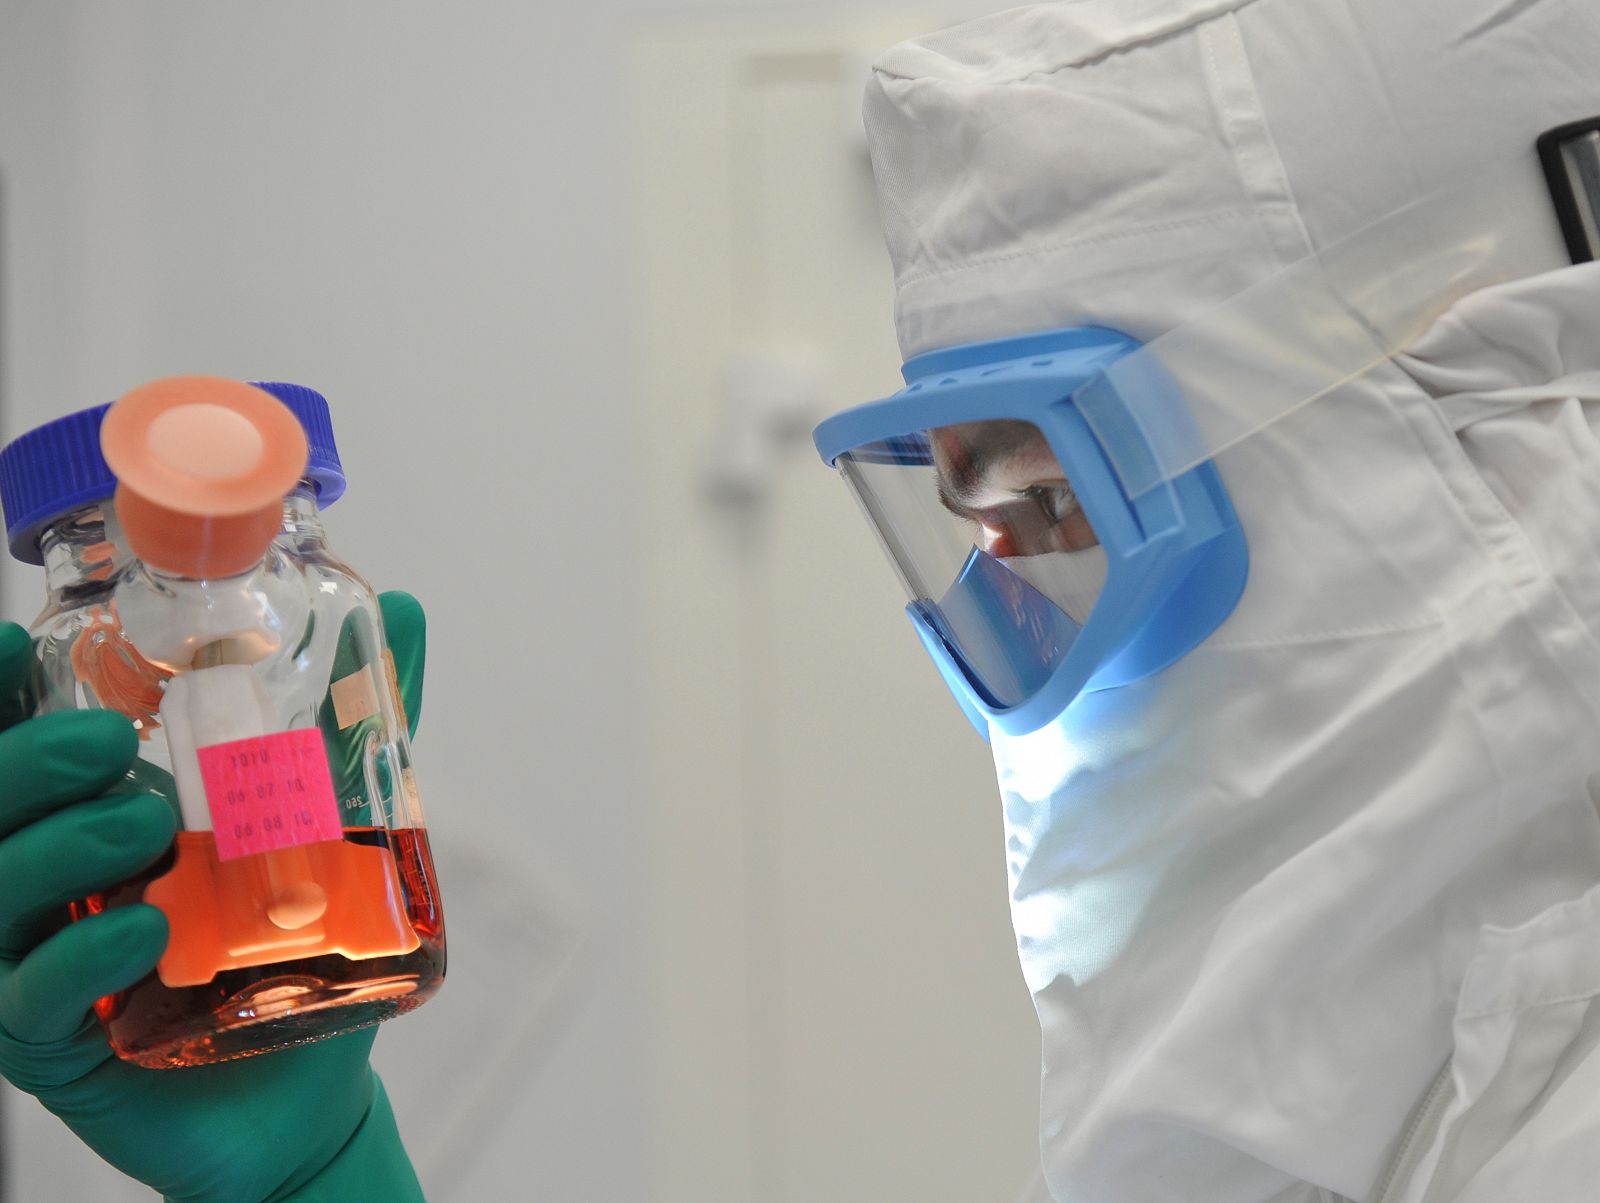 Imagen tomada en el laboratorio donde se investiga la vacuna contra la tuberculosis.